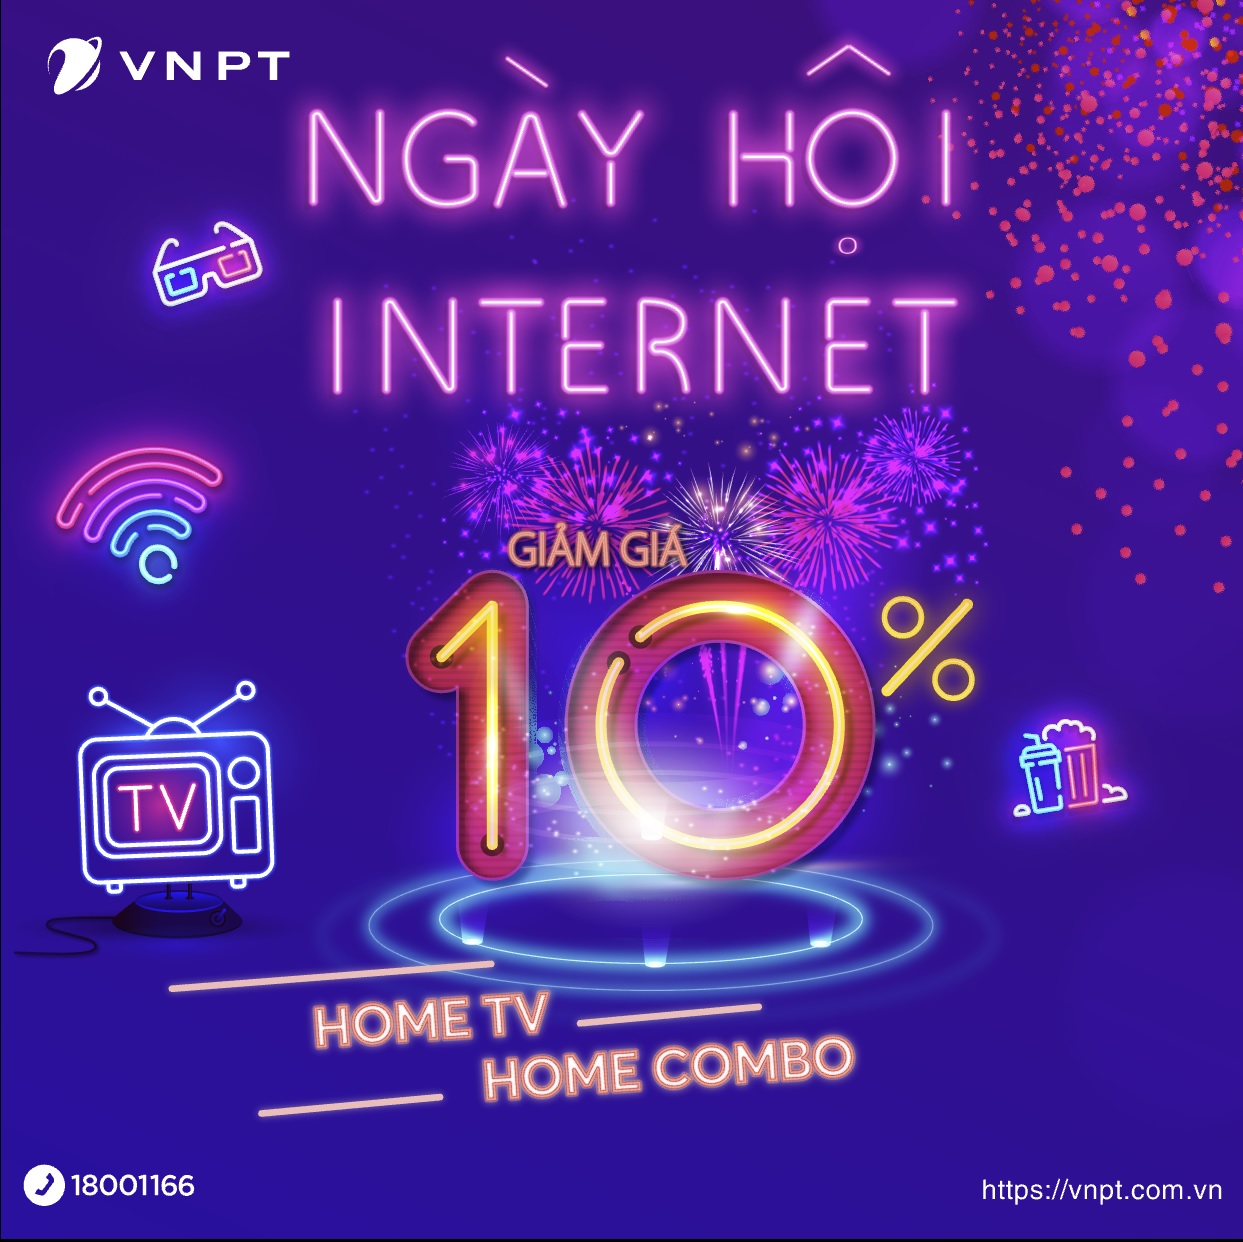 VNPT Hà Nội triển khai chương trình khuyến mại “Ngày hội Internet” 